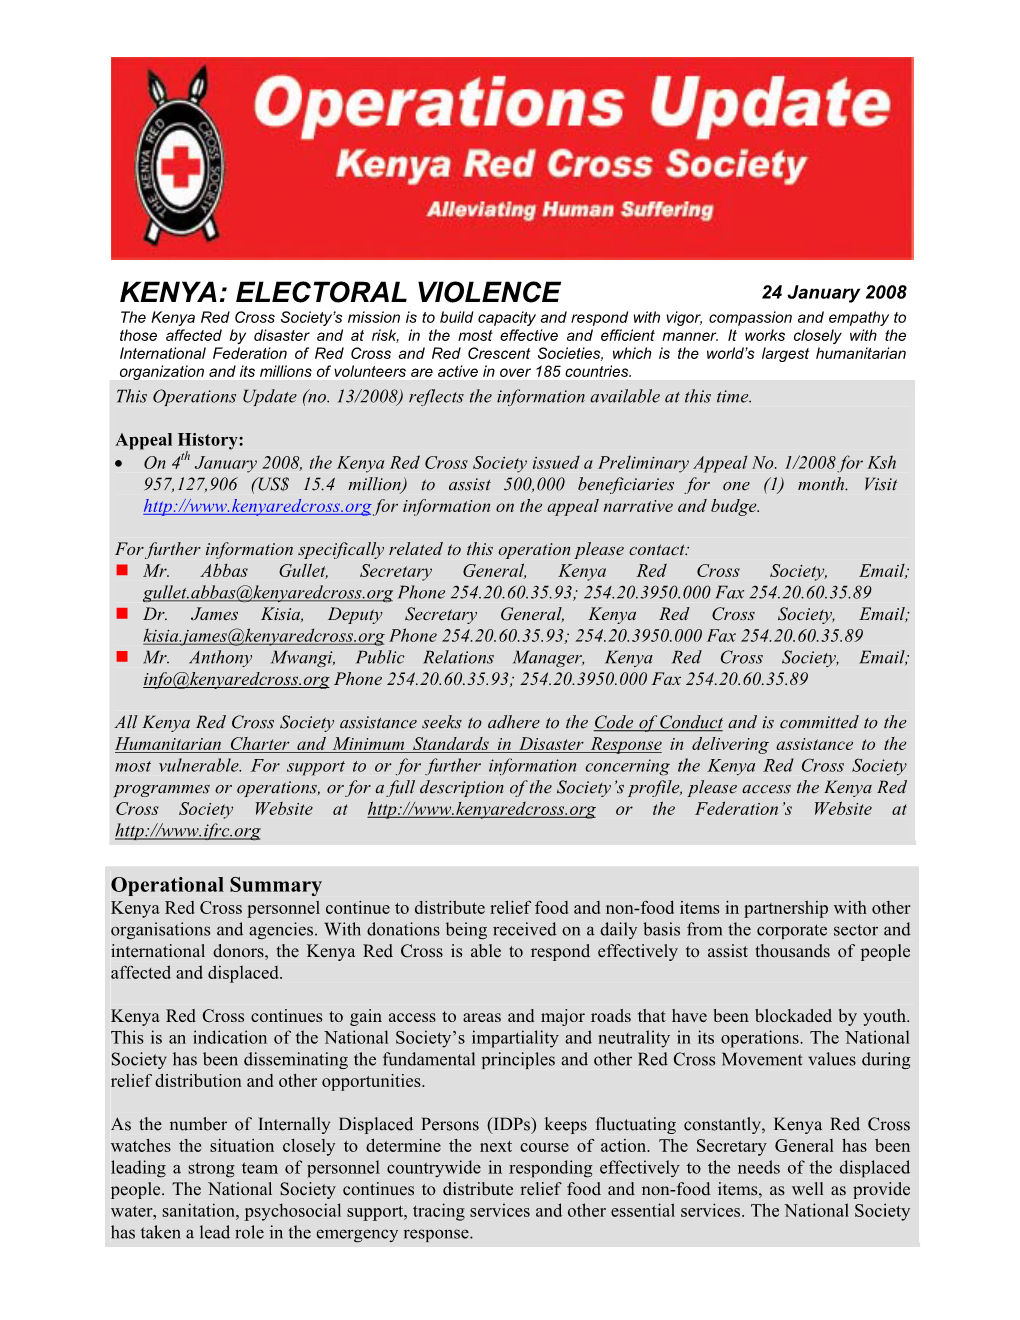 Kenya: Electoral Violence